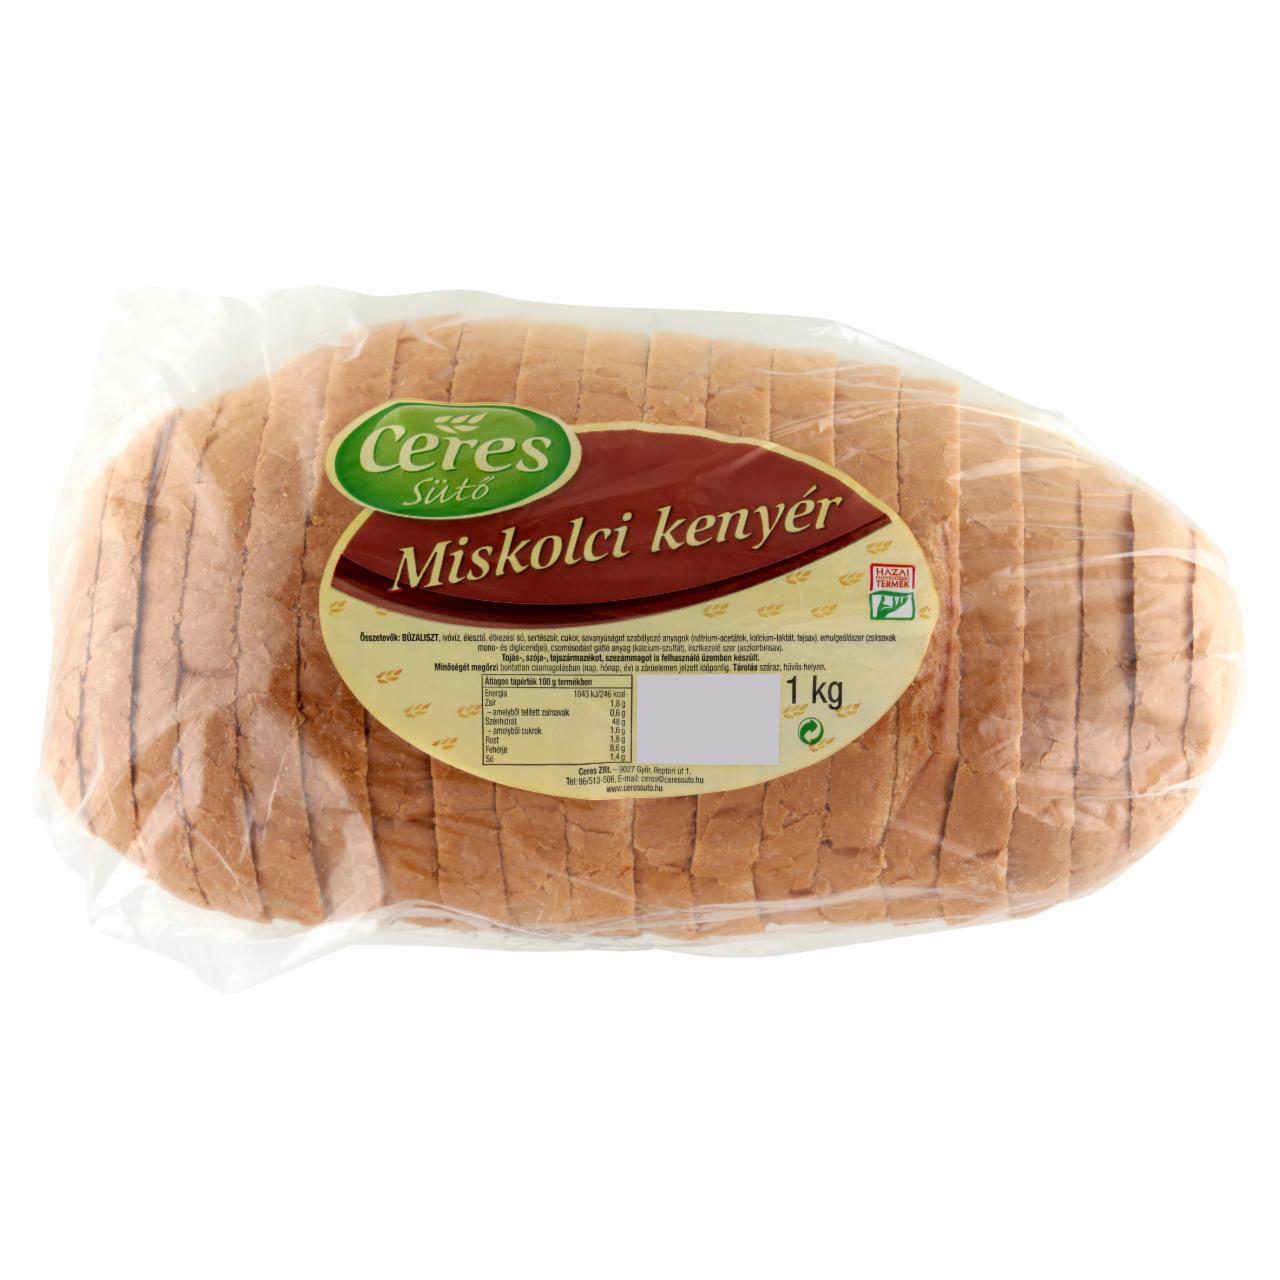 Képek - Ceres Sütő miskolci kenyér 1 kg